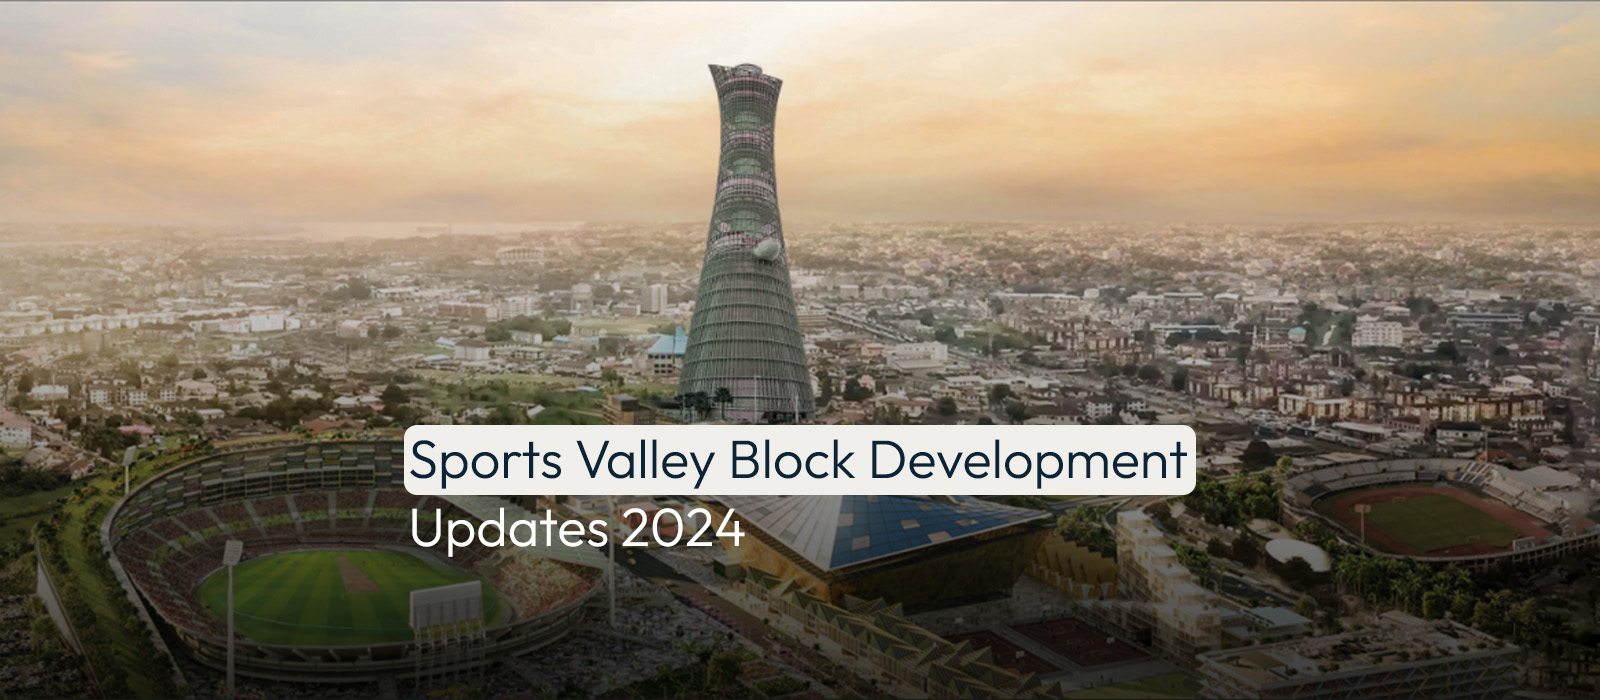 Sports Valley Block Development Updates 2024